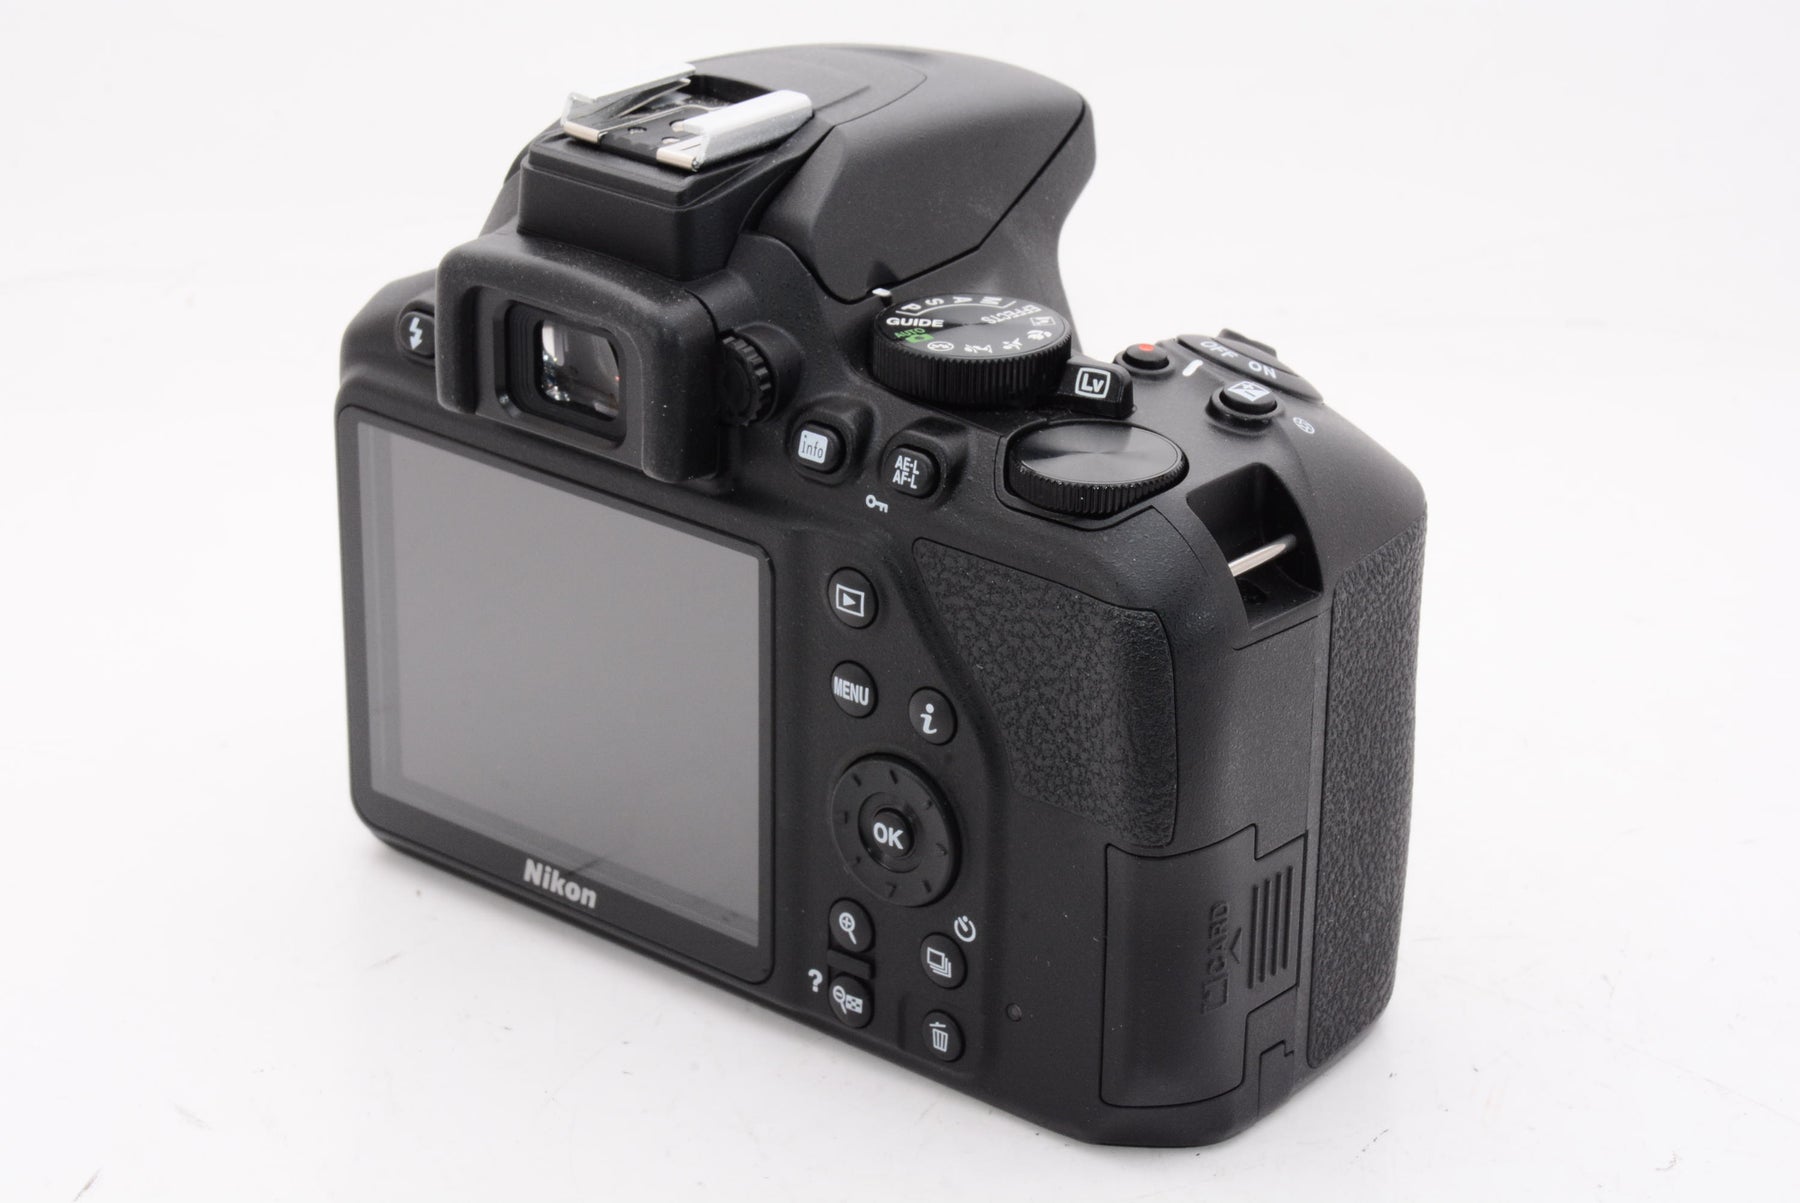 Nikon デジタル一眼レフカメラ D3500 AF-P 18-55 VR